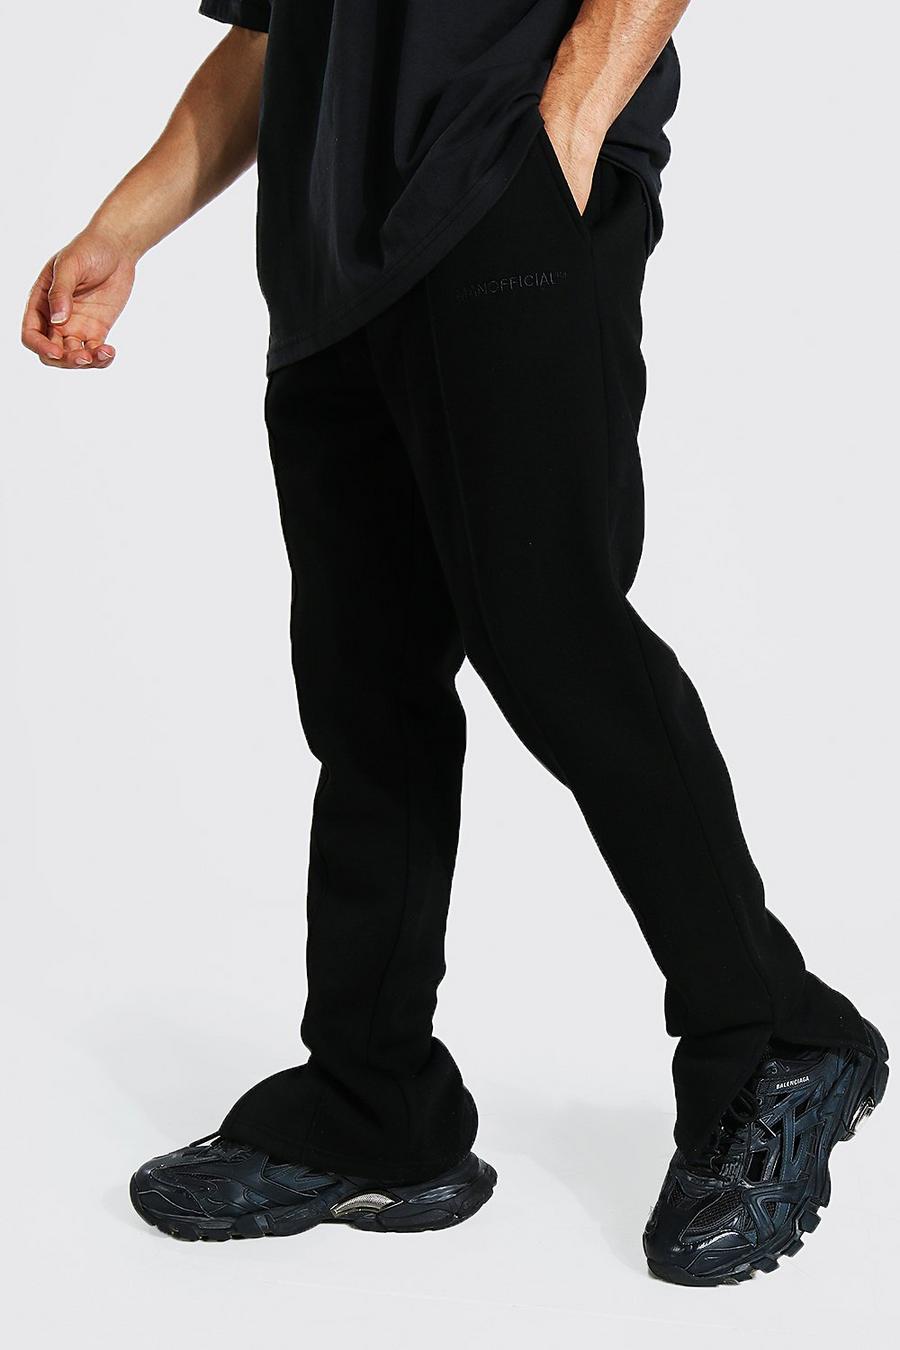 Pantaloni tuta Slim Fit Man Official con spacco sul fondo, Black nero image number 1